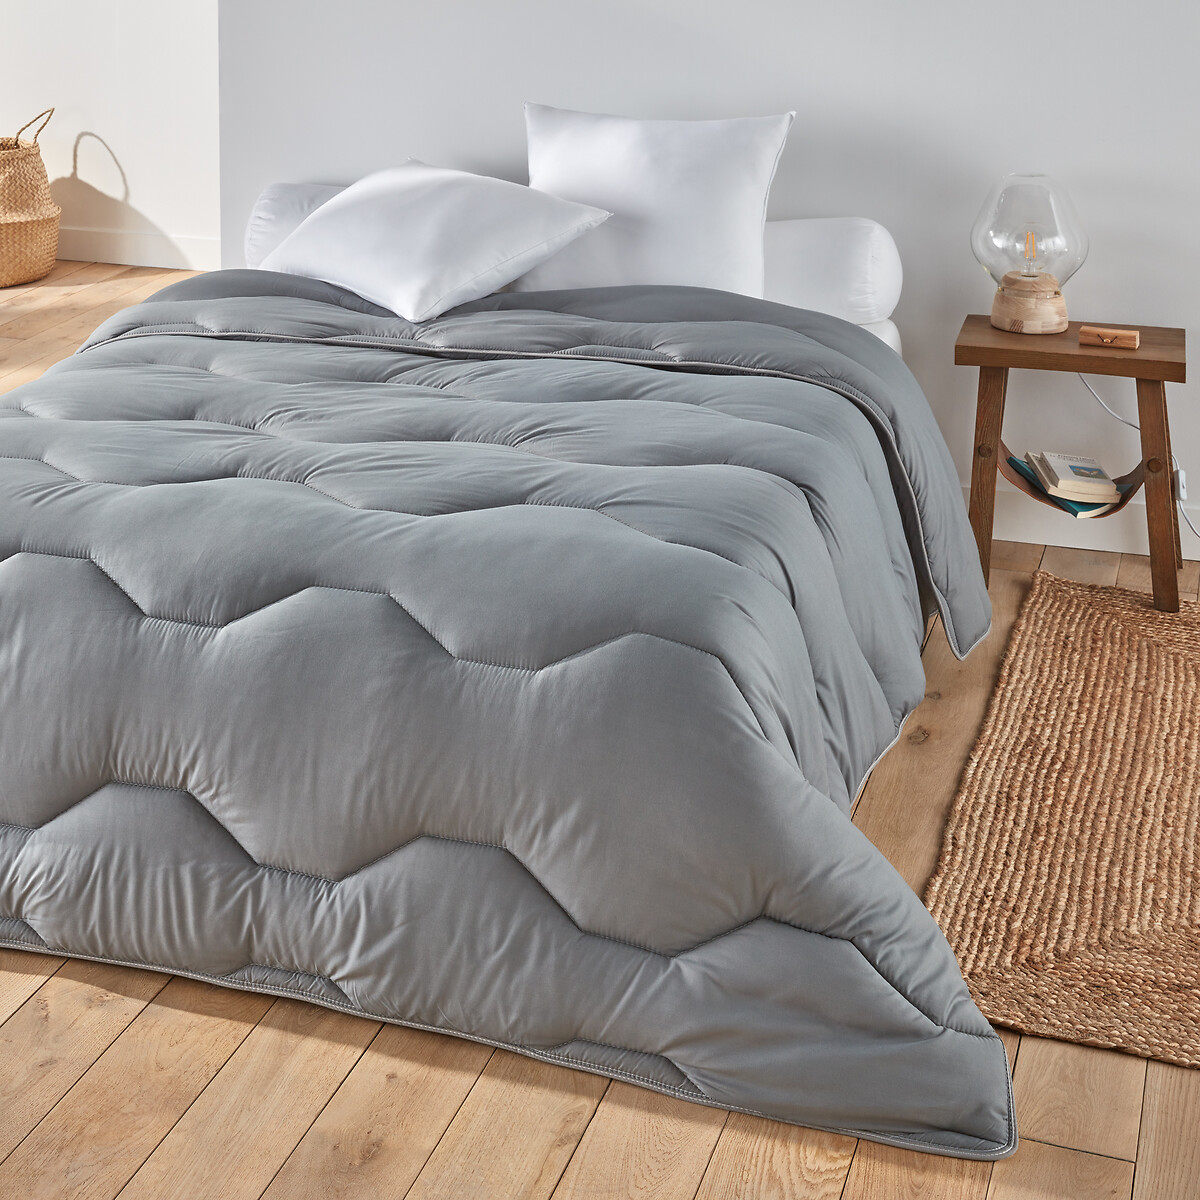 Одеяло La Redoute Из синтетики  гм 260 x 240 см серый, размер 260 x 240 см - фото 1